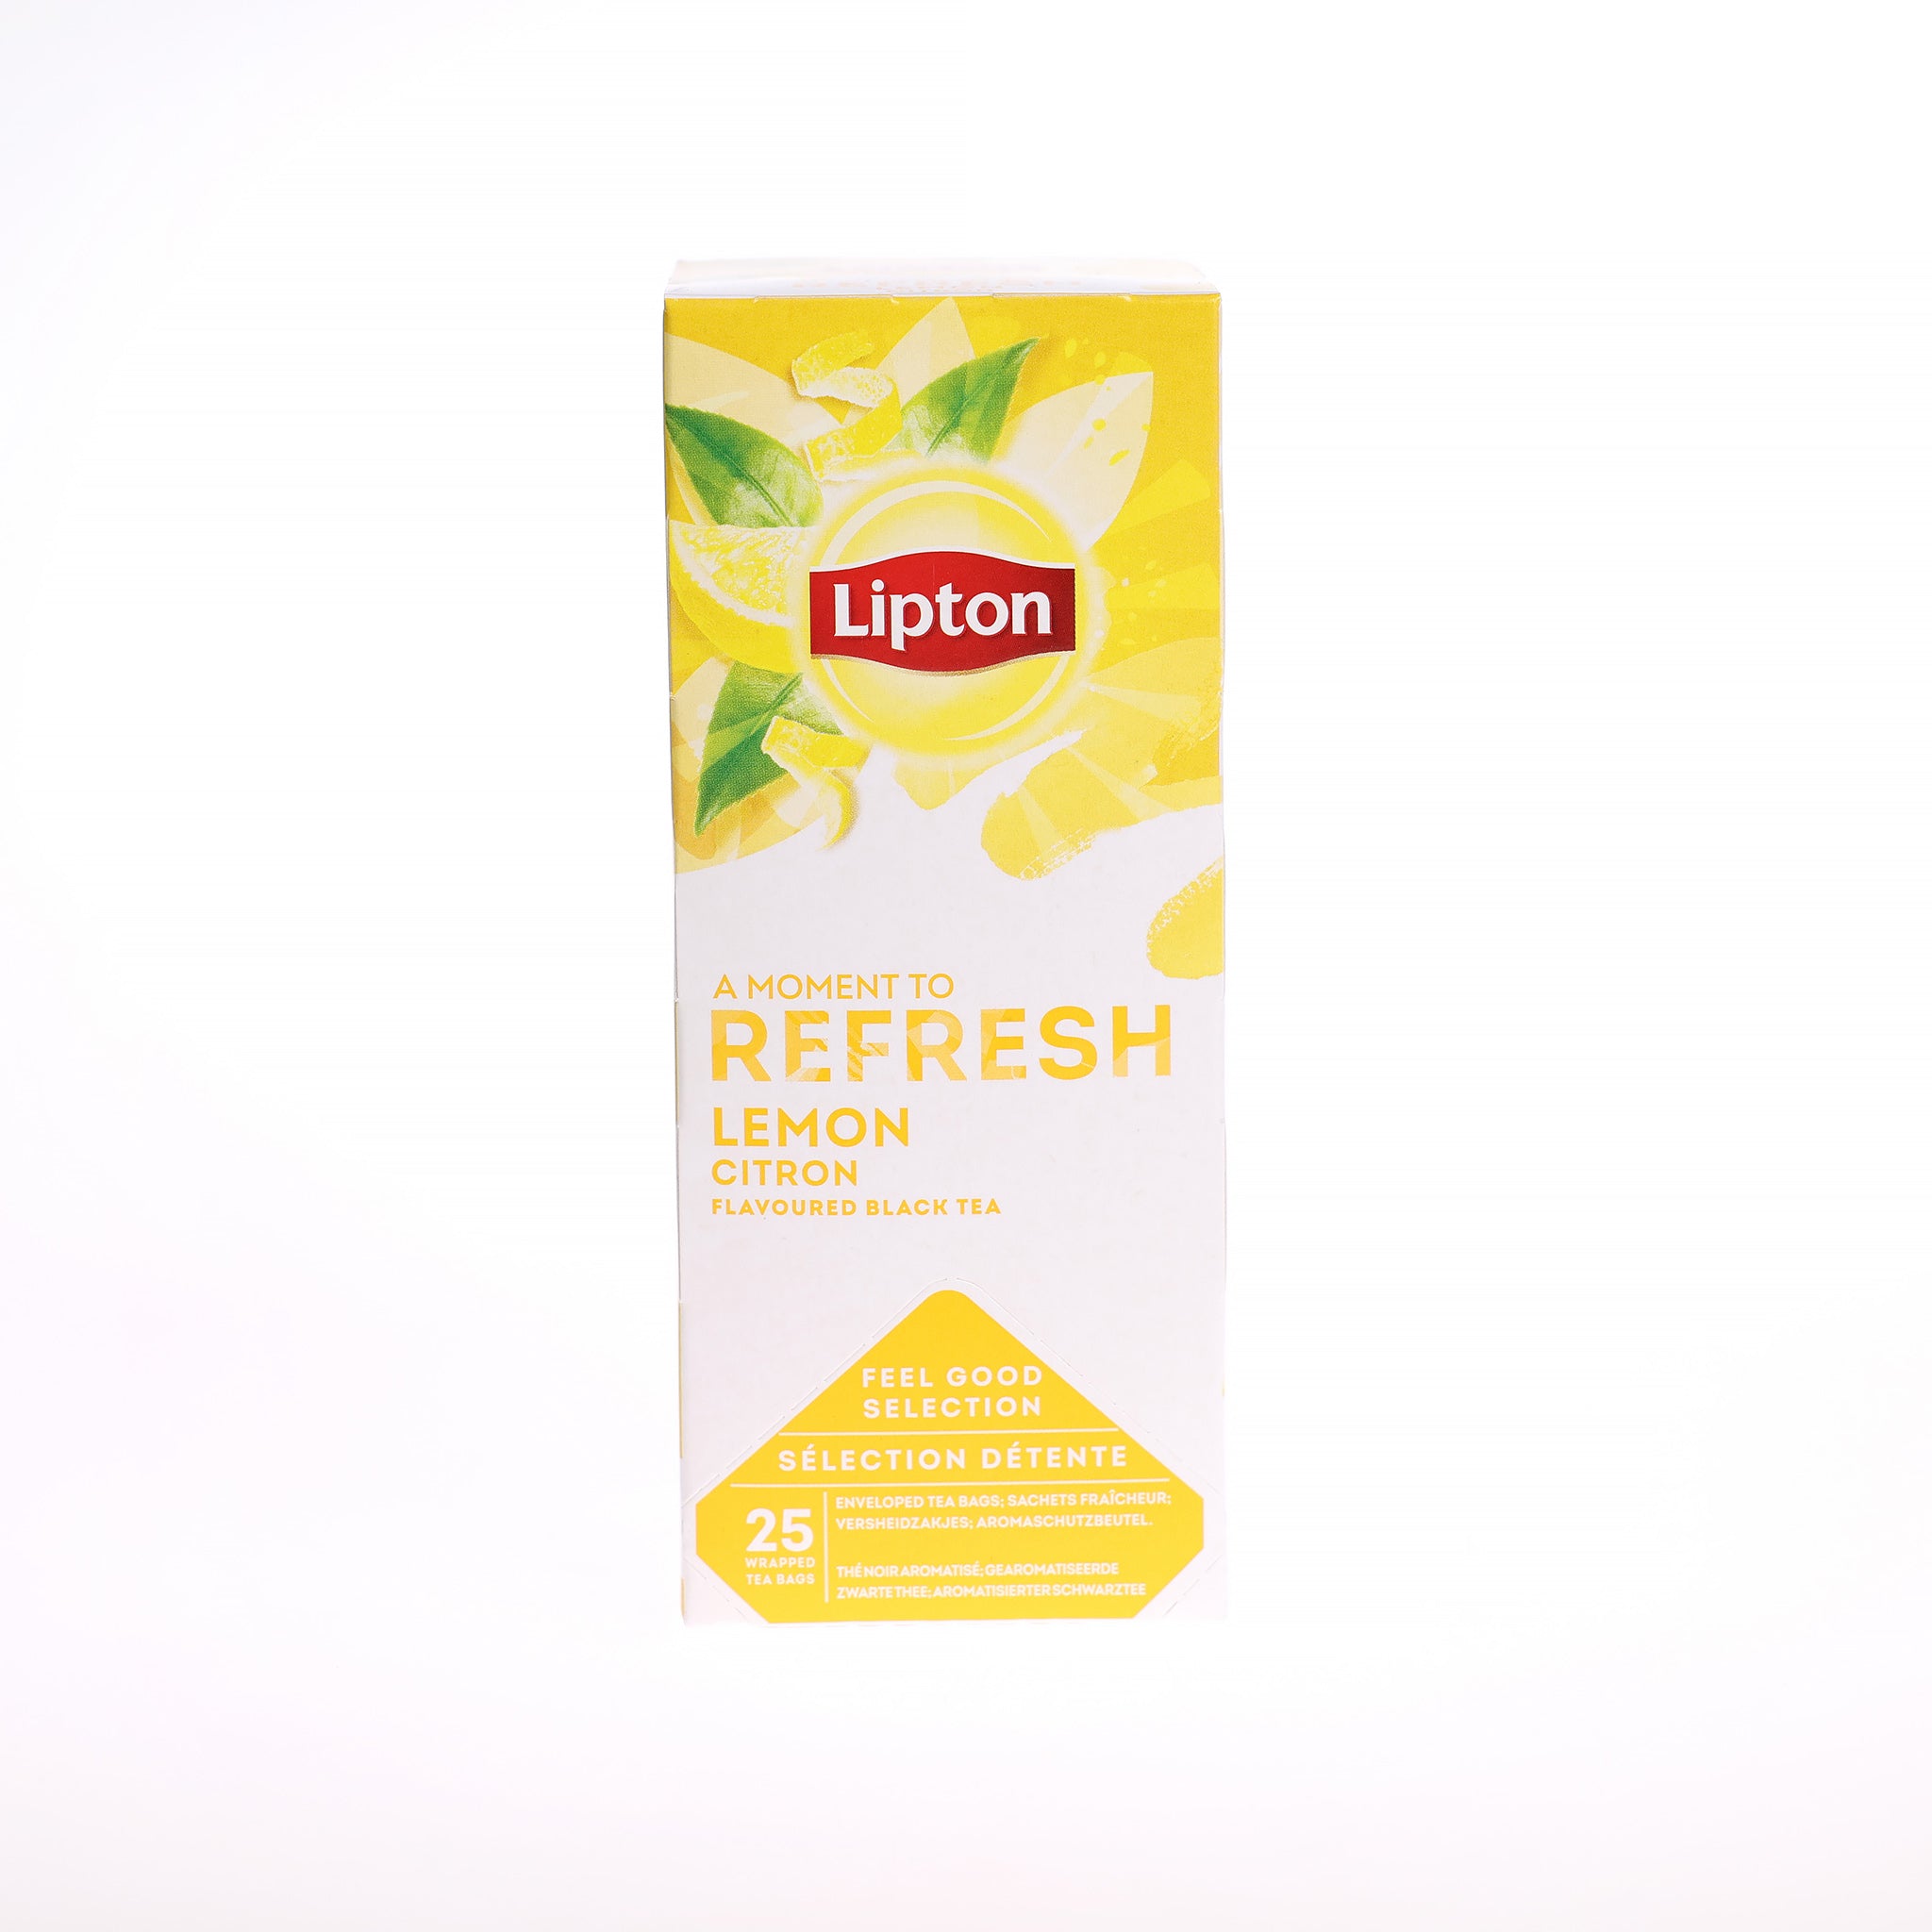 Tebreve fra Lipton med smag af Lemon. Indpakket i lufttæt emballage, så friskhed og smag bevares. Leveres 6 pk. á 25 tebreve.